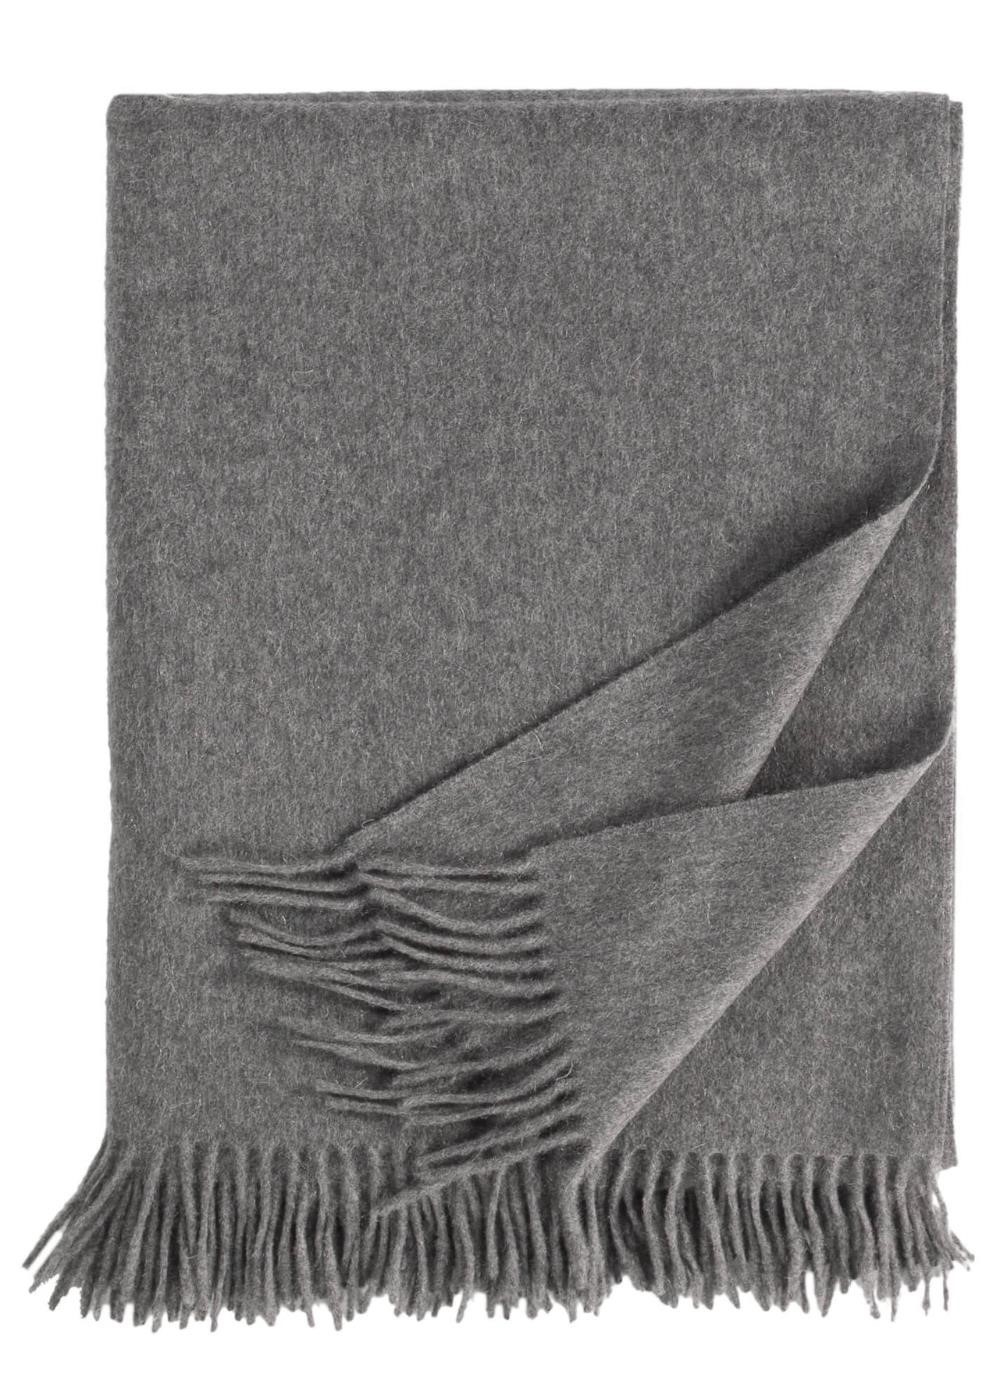 Eagle Products Wolldecke aus 100% Kaschmir in grau 130 x 195 cm